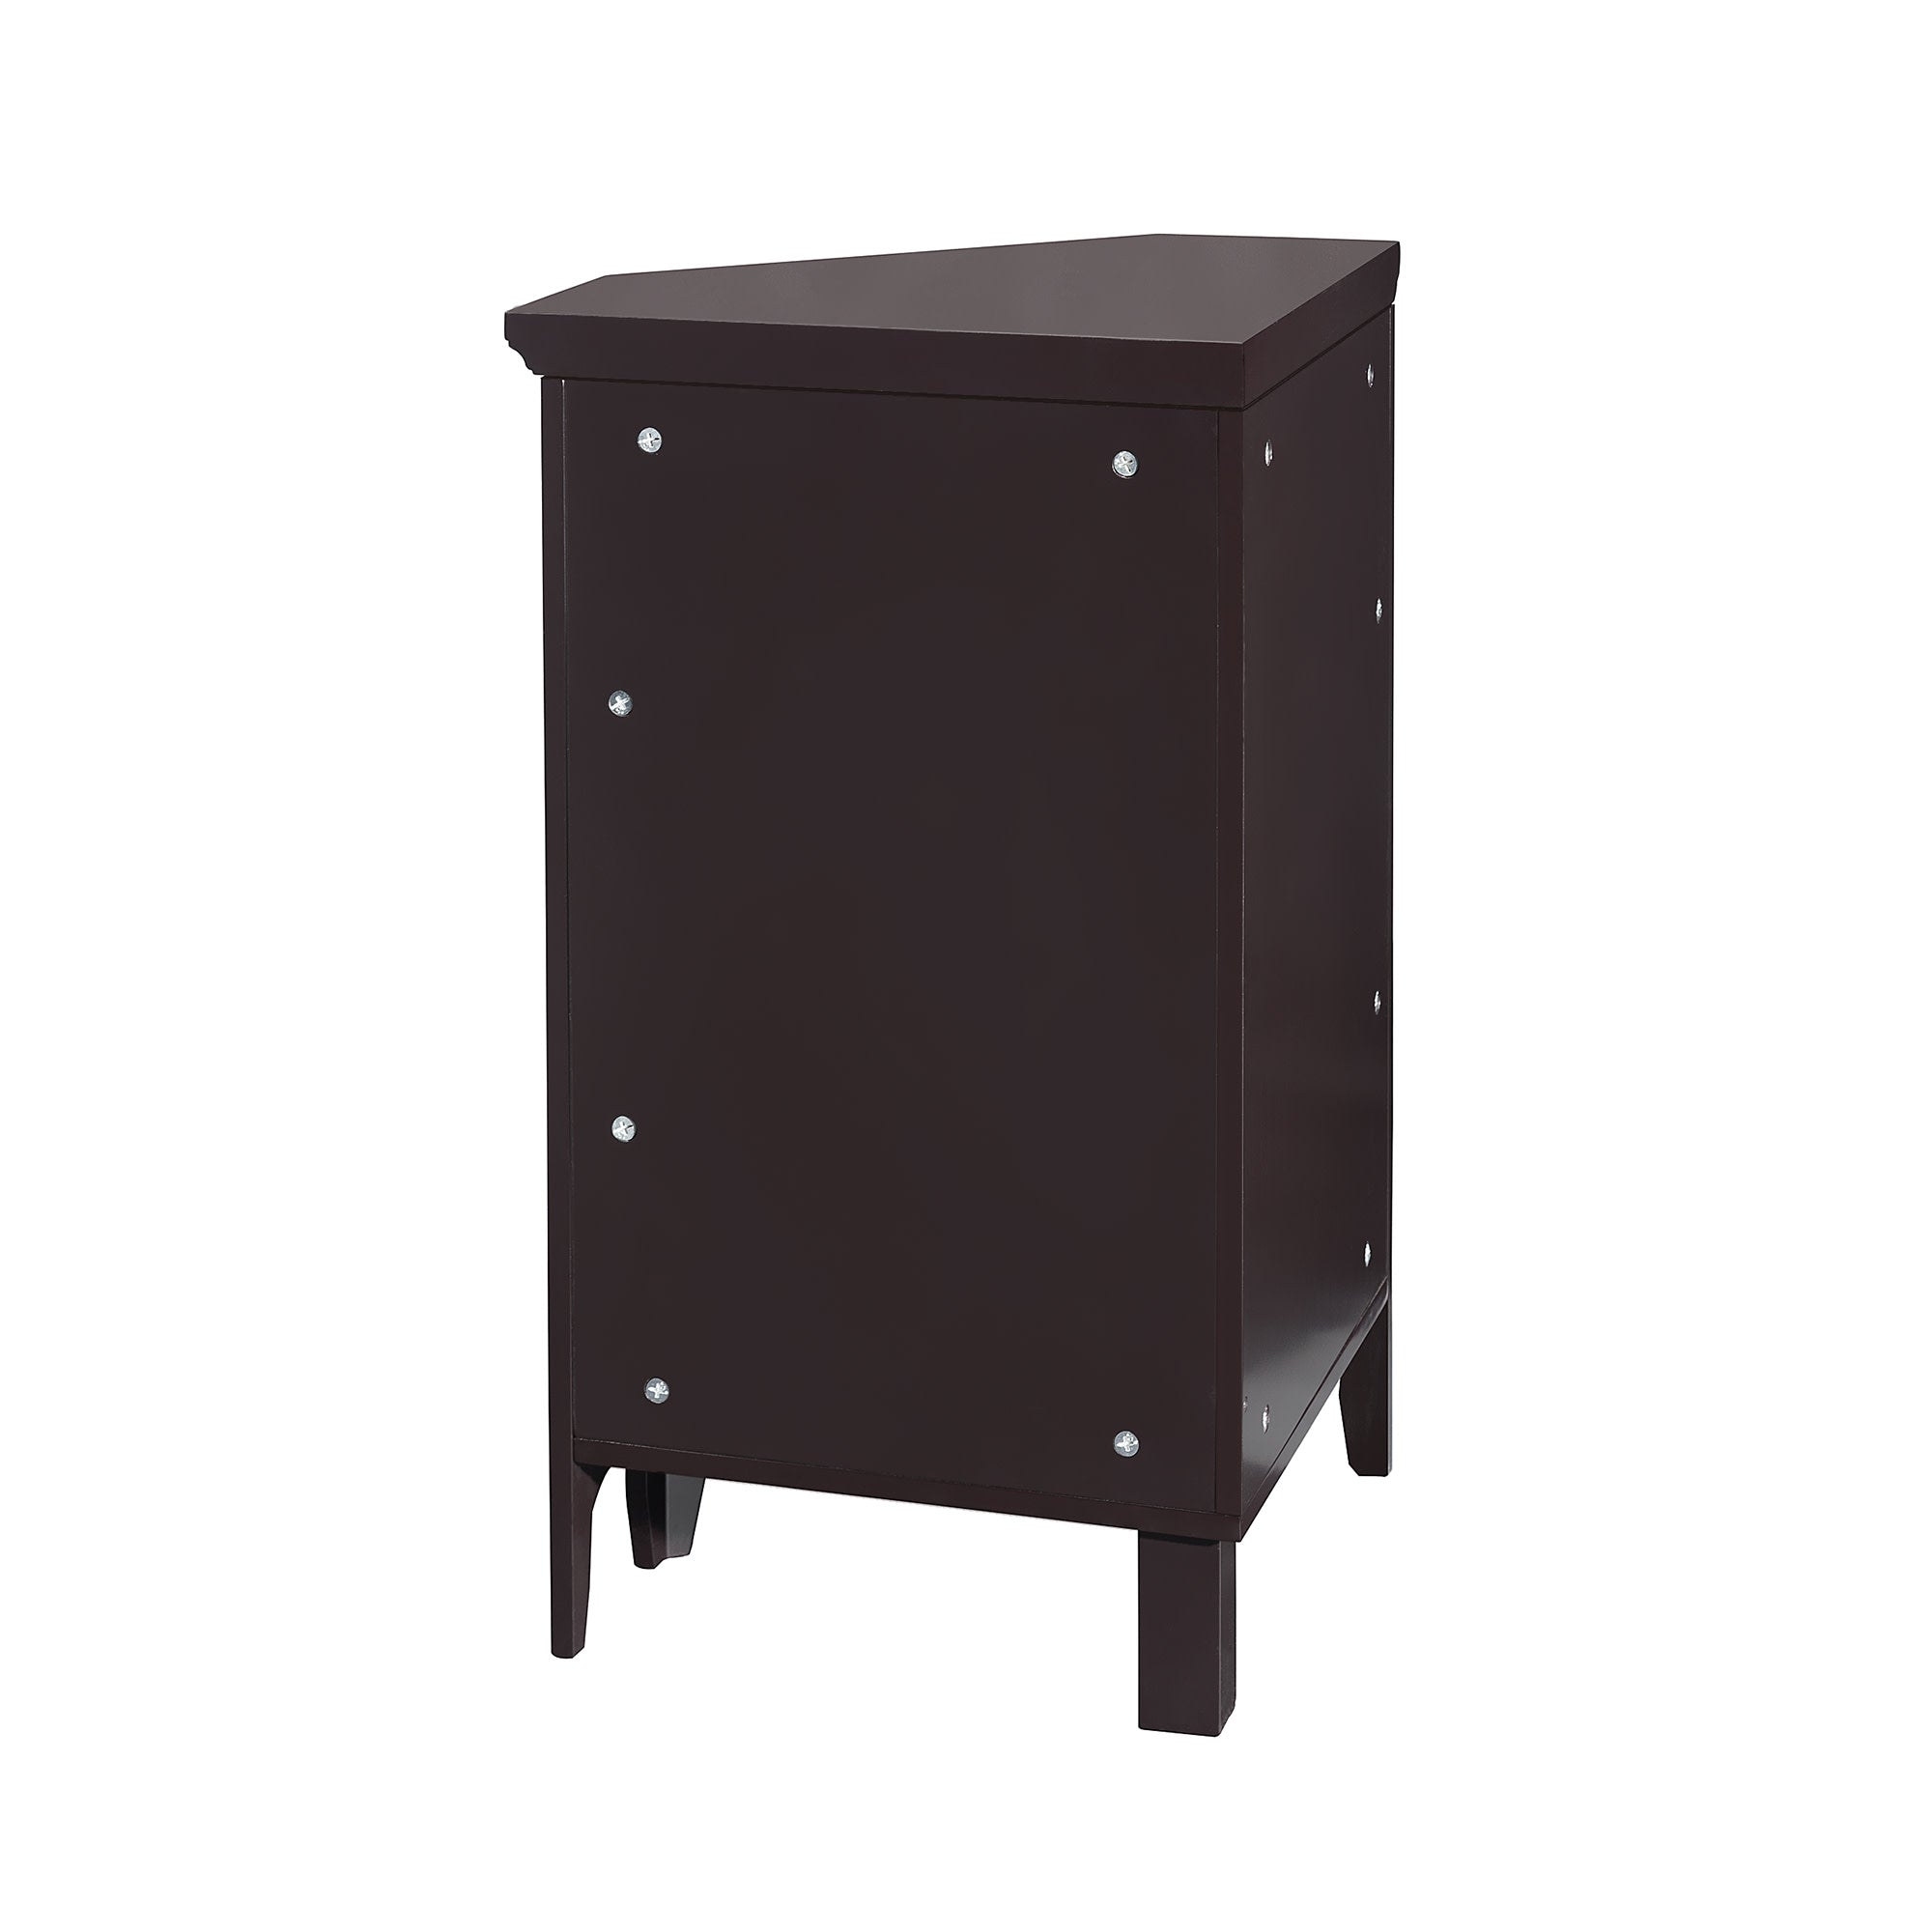 Teamson Home Glancy Wooden Corner Floor Cabinet with Shutter Door, Dark Brown